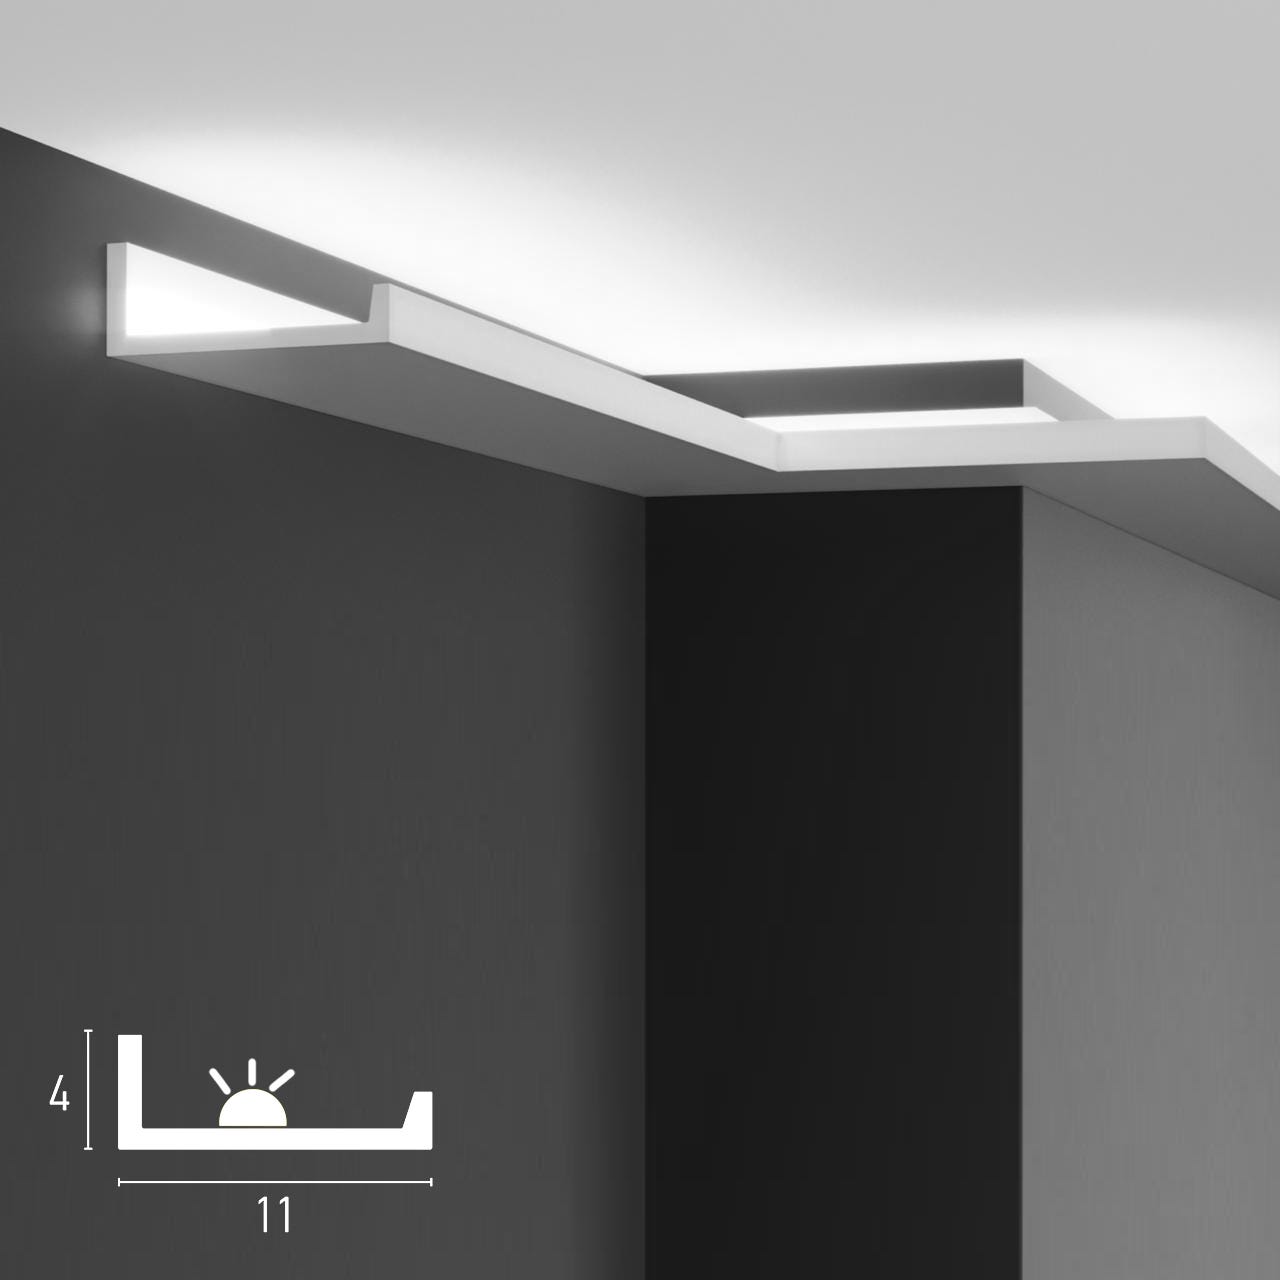 Cornici velette per led a soffitto e parete per illuminazione indiretta con  le strisce led o faretti per cartongesso - 2 metri - P890